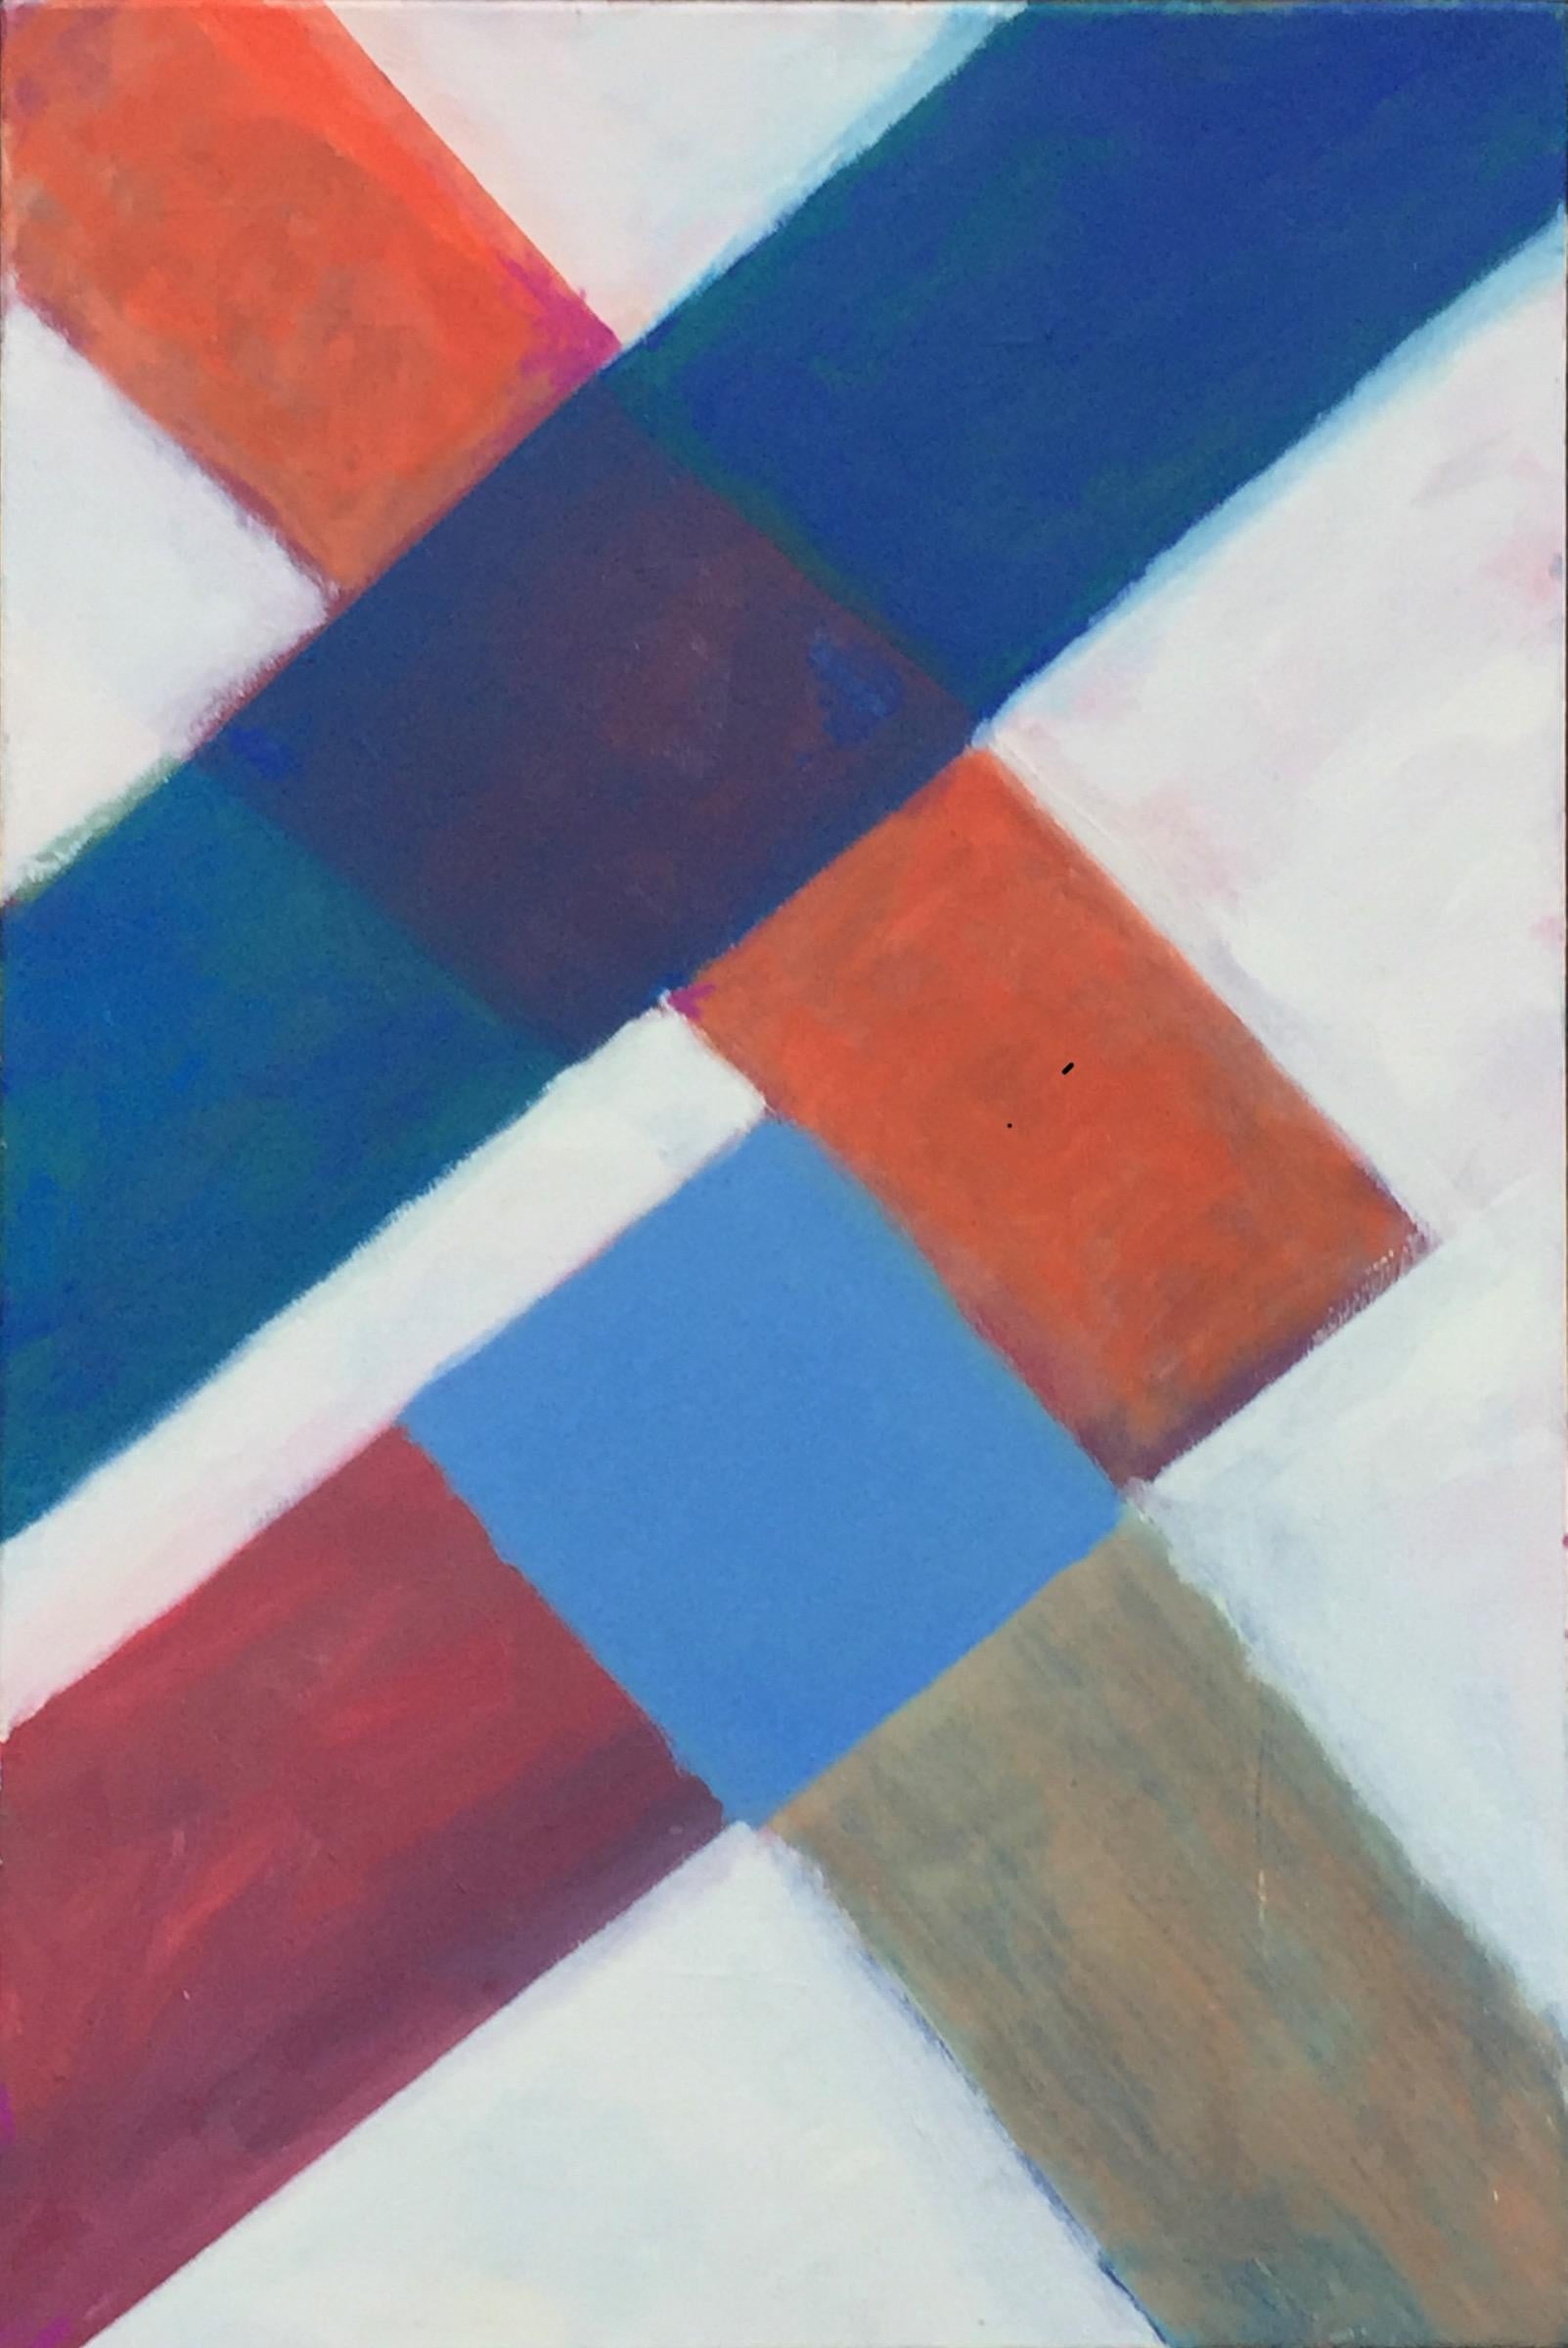 Abstract Painting Robert Petrick - The Dancer, série Chromatic Collision, peinture à la ligne géométrique abstraite